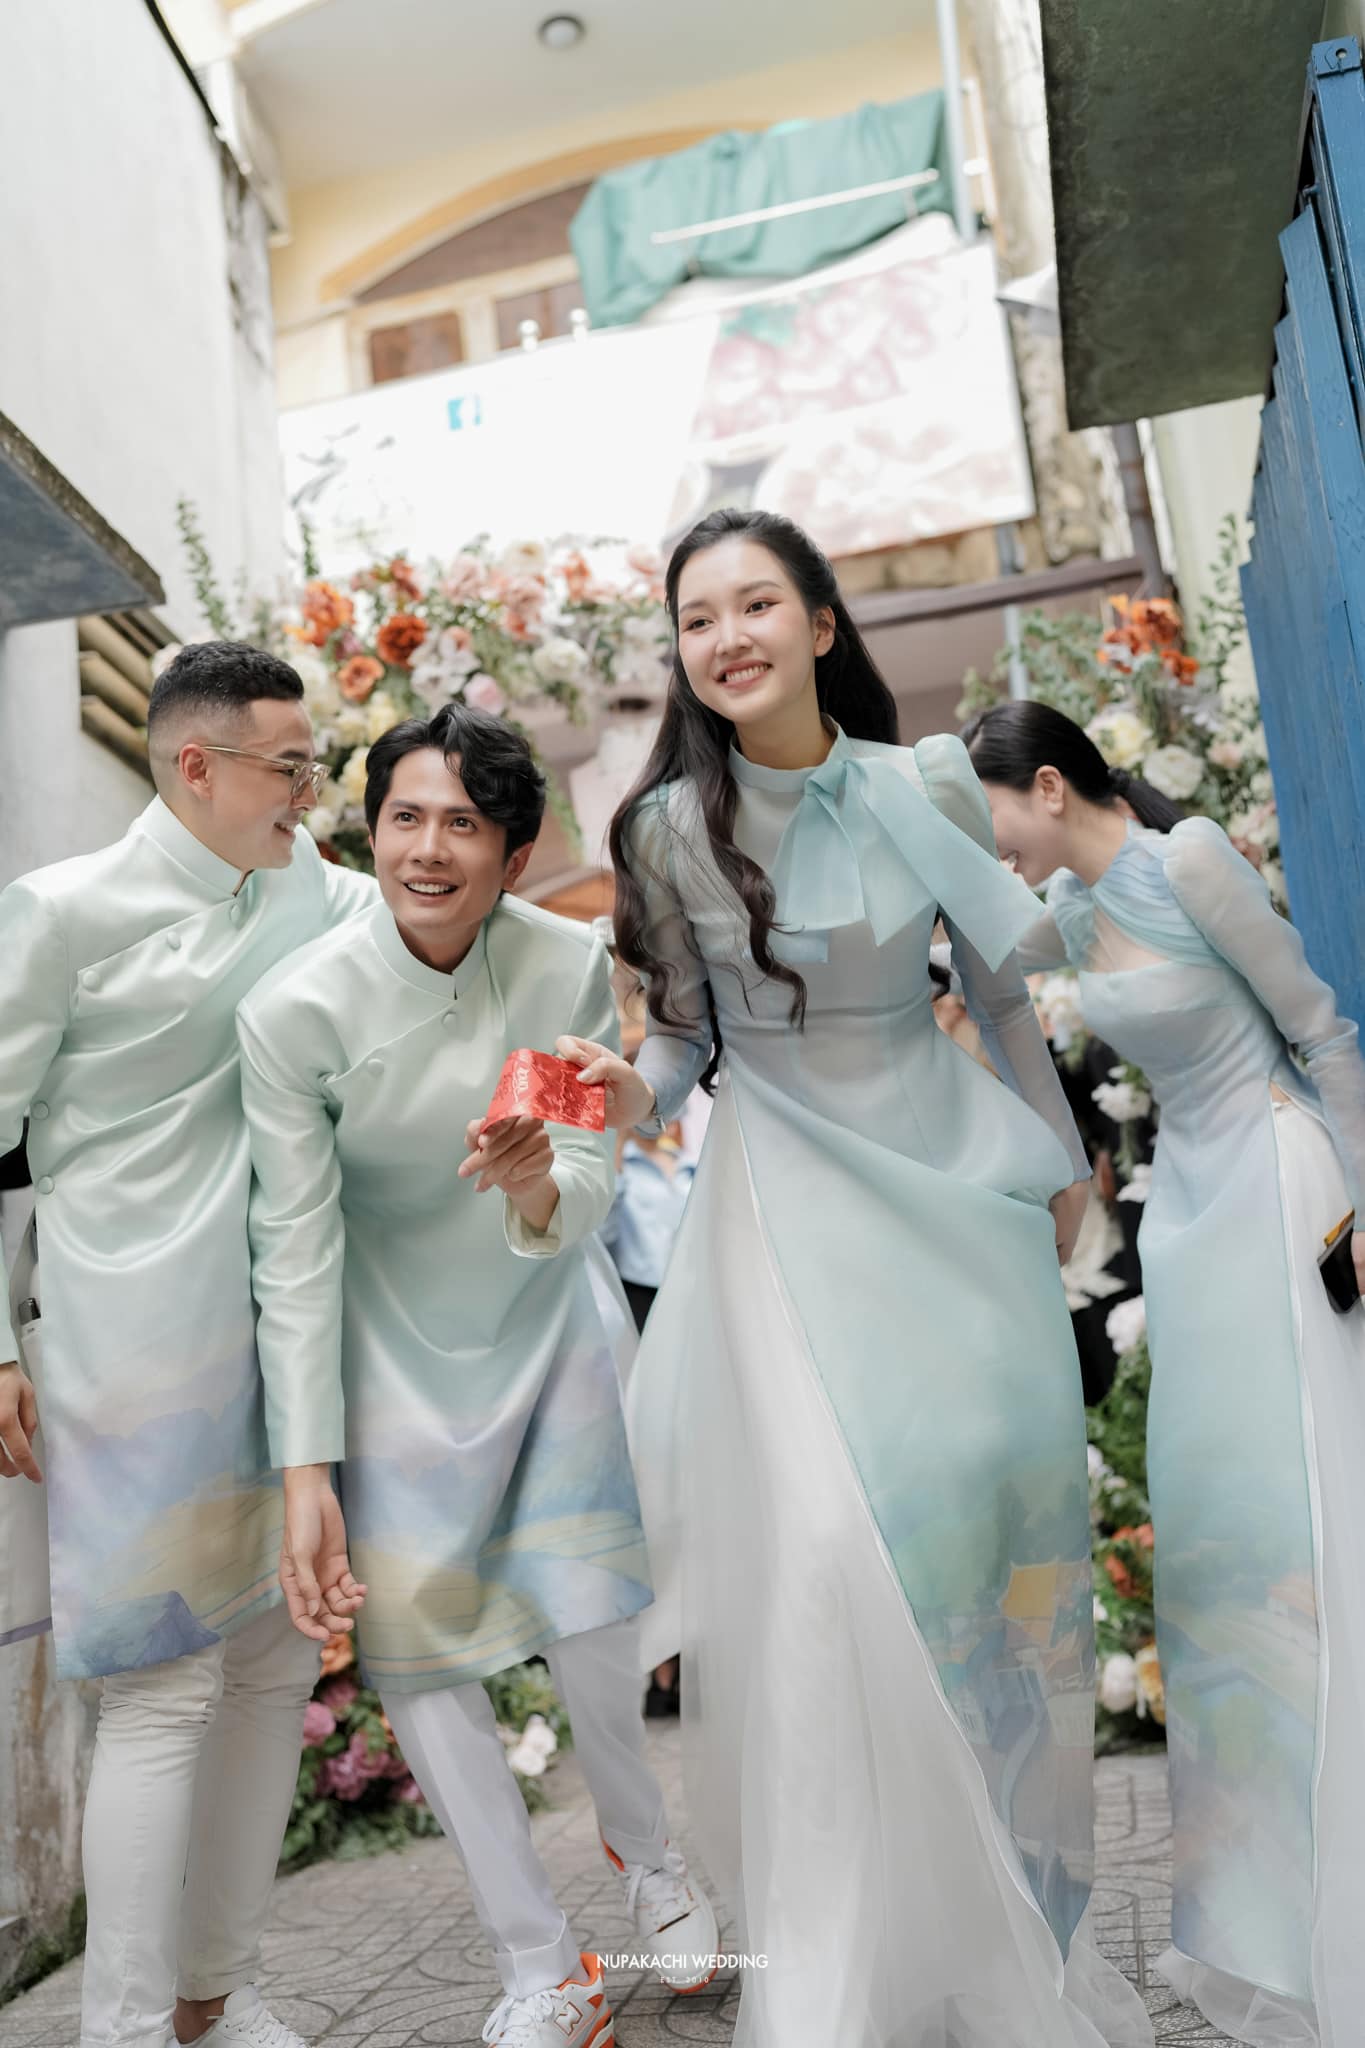 Khả Như và Huỳnh Phương 'né' nhau tuyệt đối tại đám cưới Phương Lan, nhưng một chi tiết để lộ chuyện tình cảm? - ảnh 2